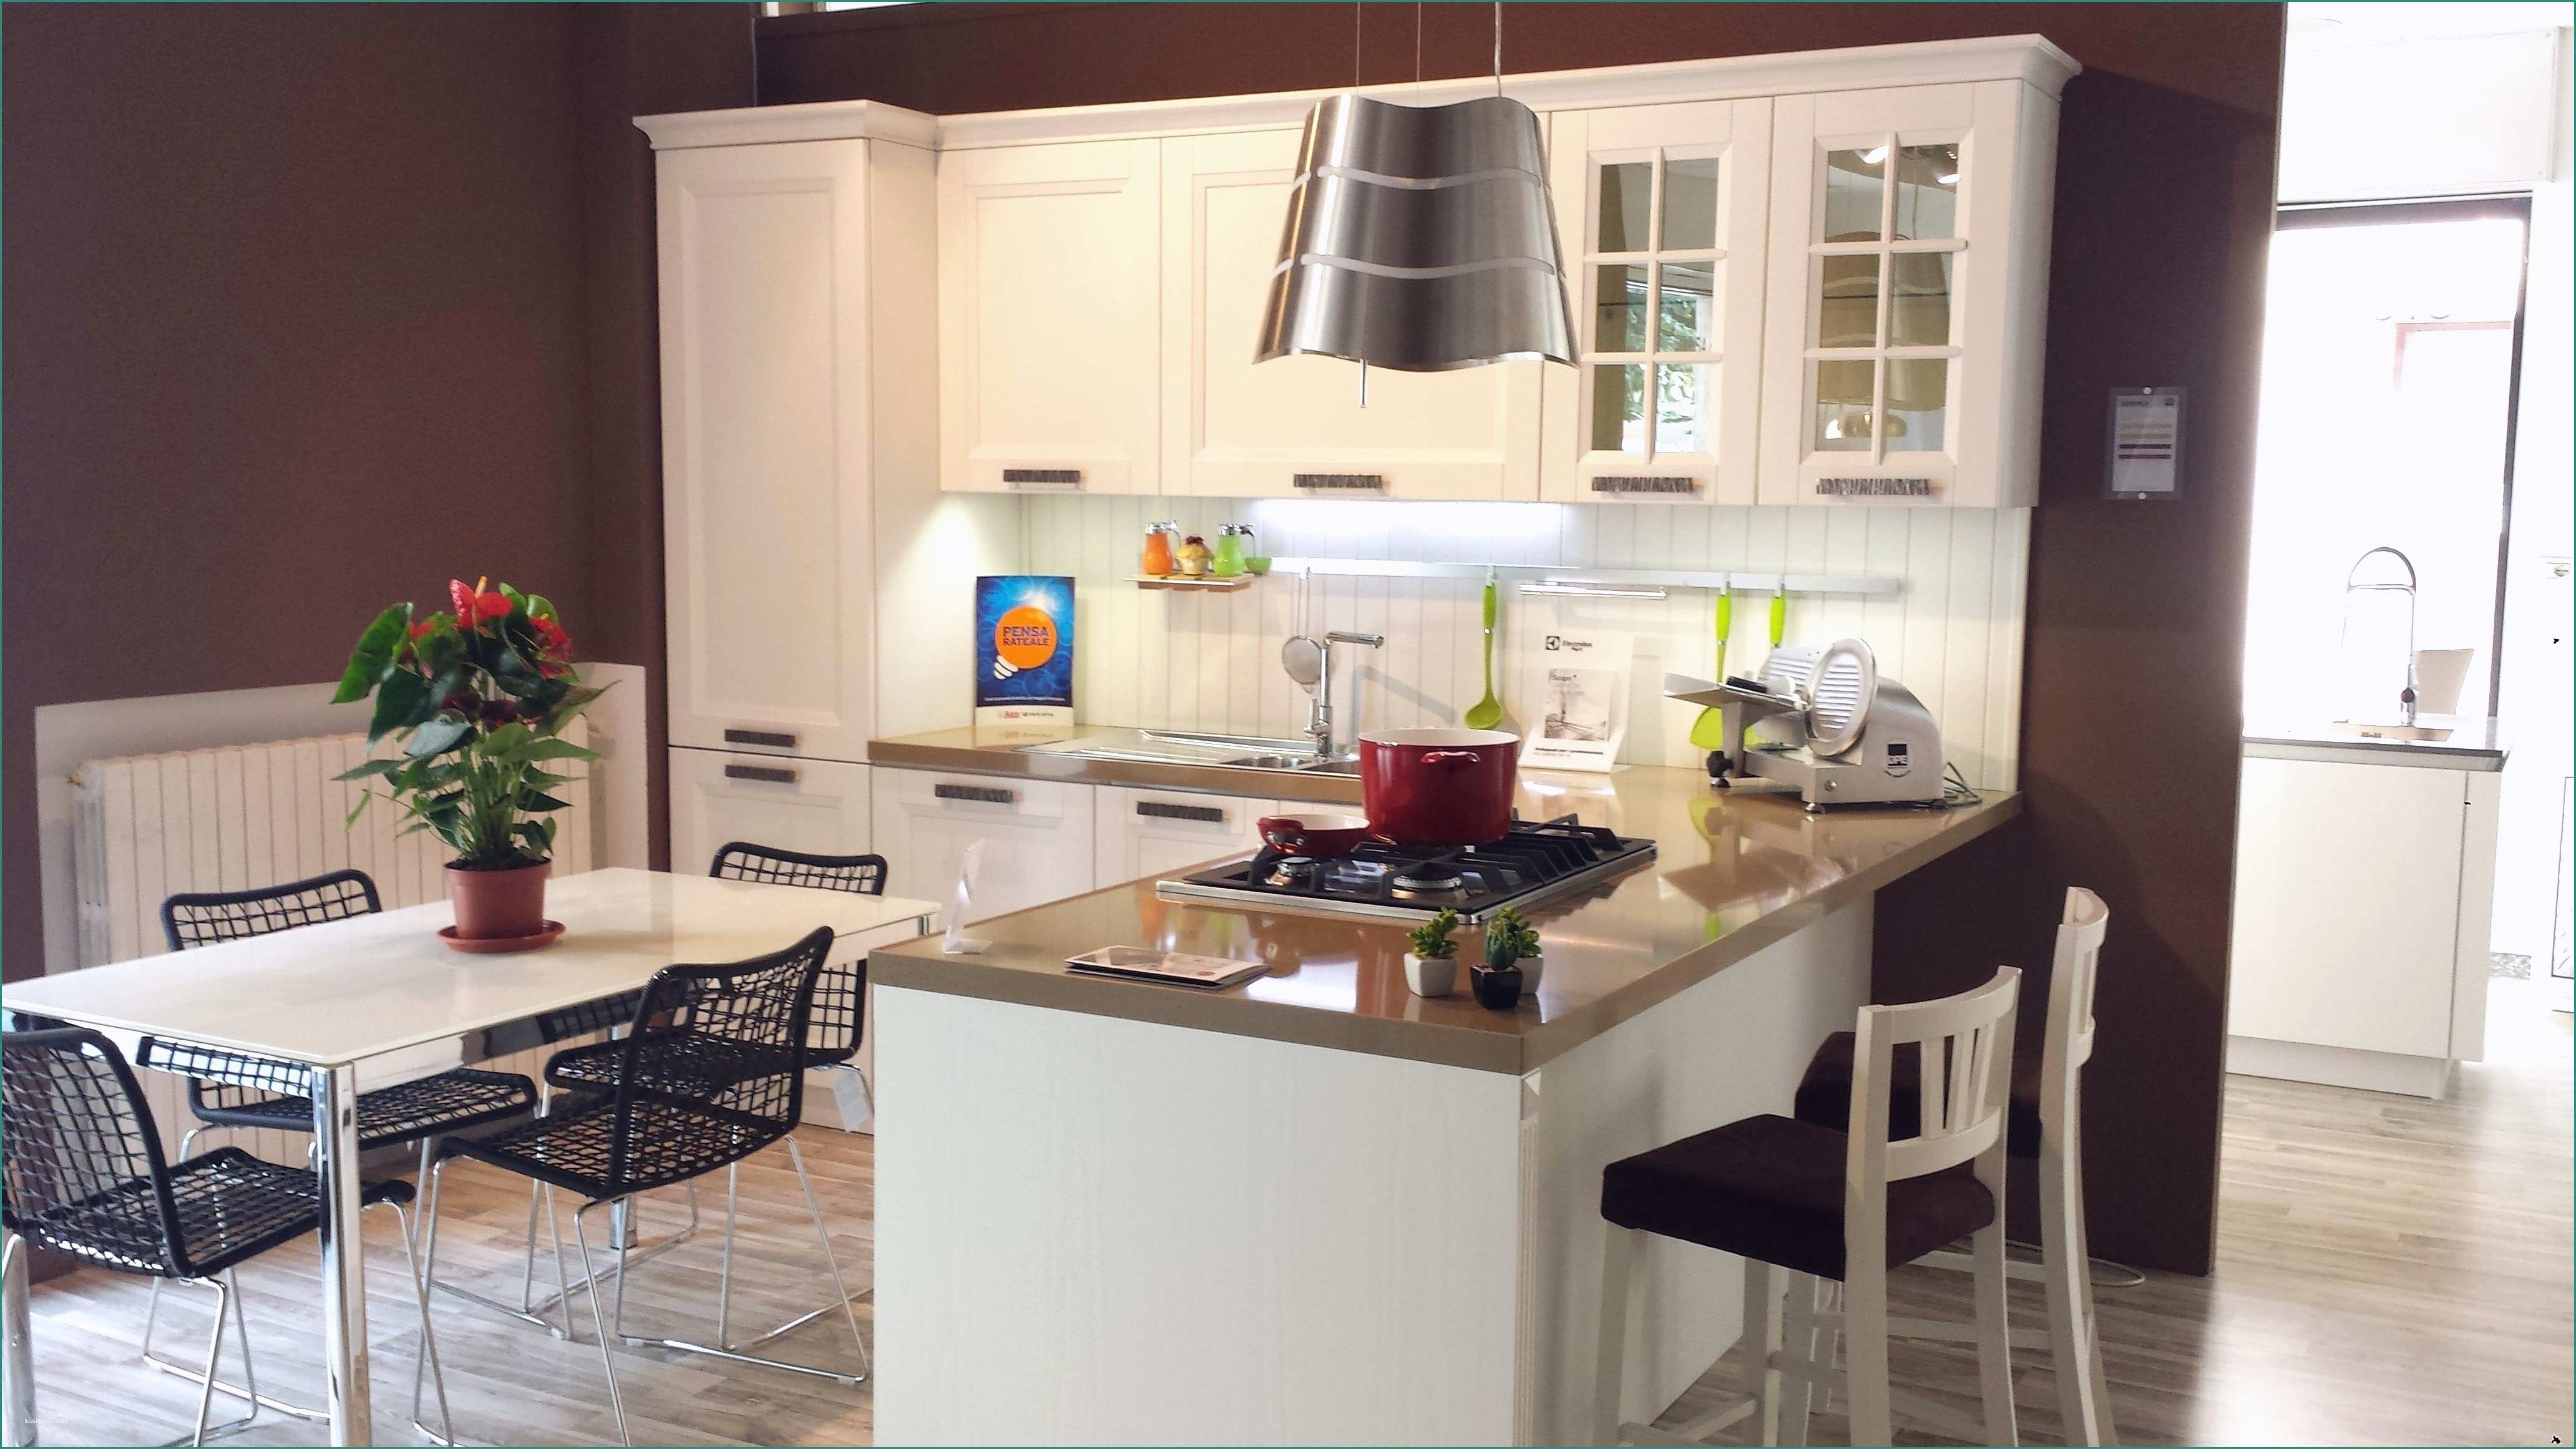 Svendita Cucine Per Rinnovo Esposizione E Cucine Esposizione Ferta Home Interior Idee Di Design